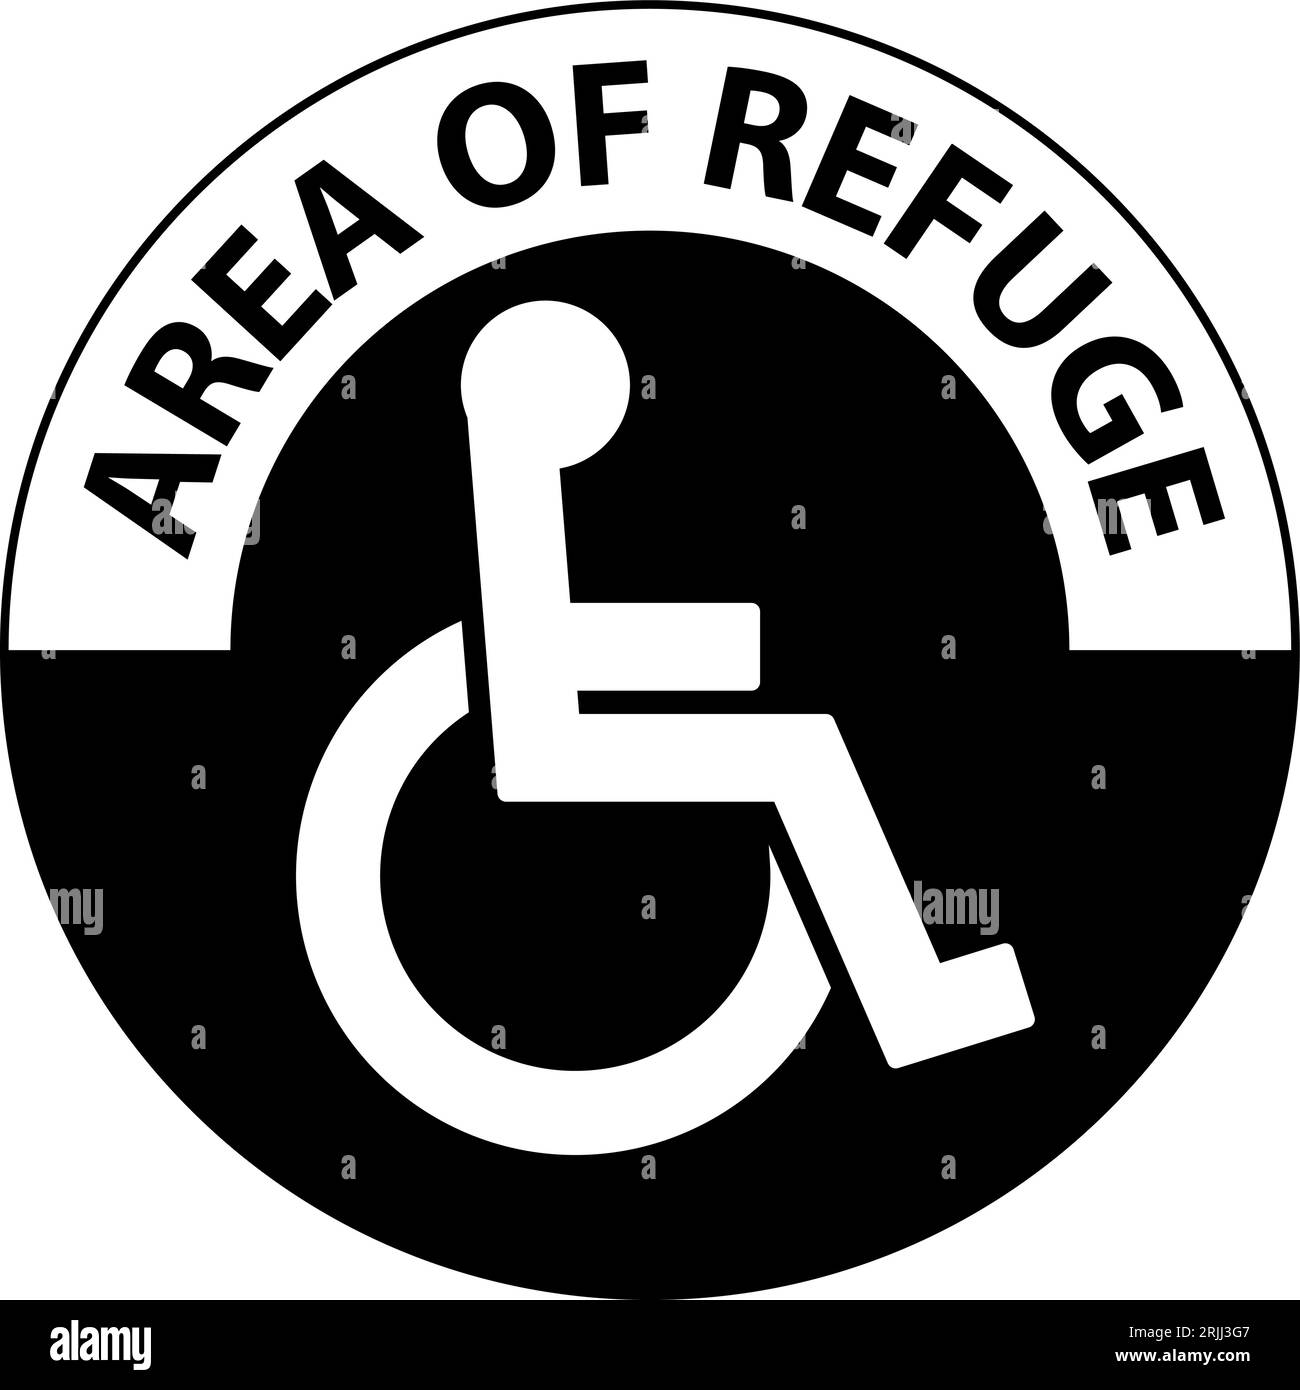 Floor Sign Area of Refuge, with Handicap Symbol Stock Vector